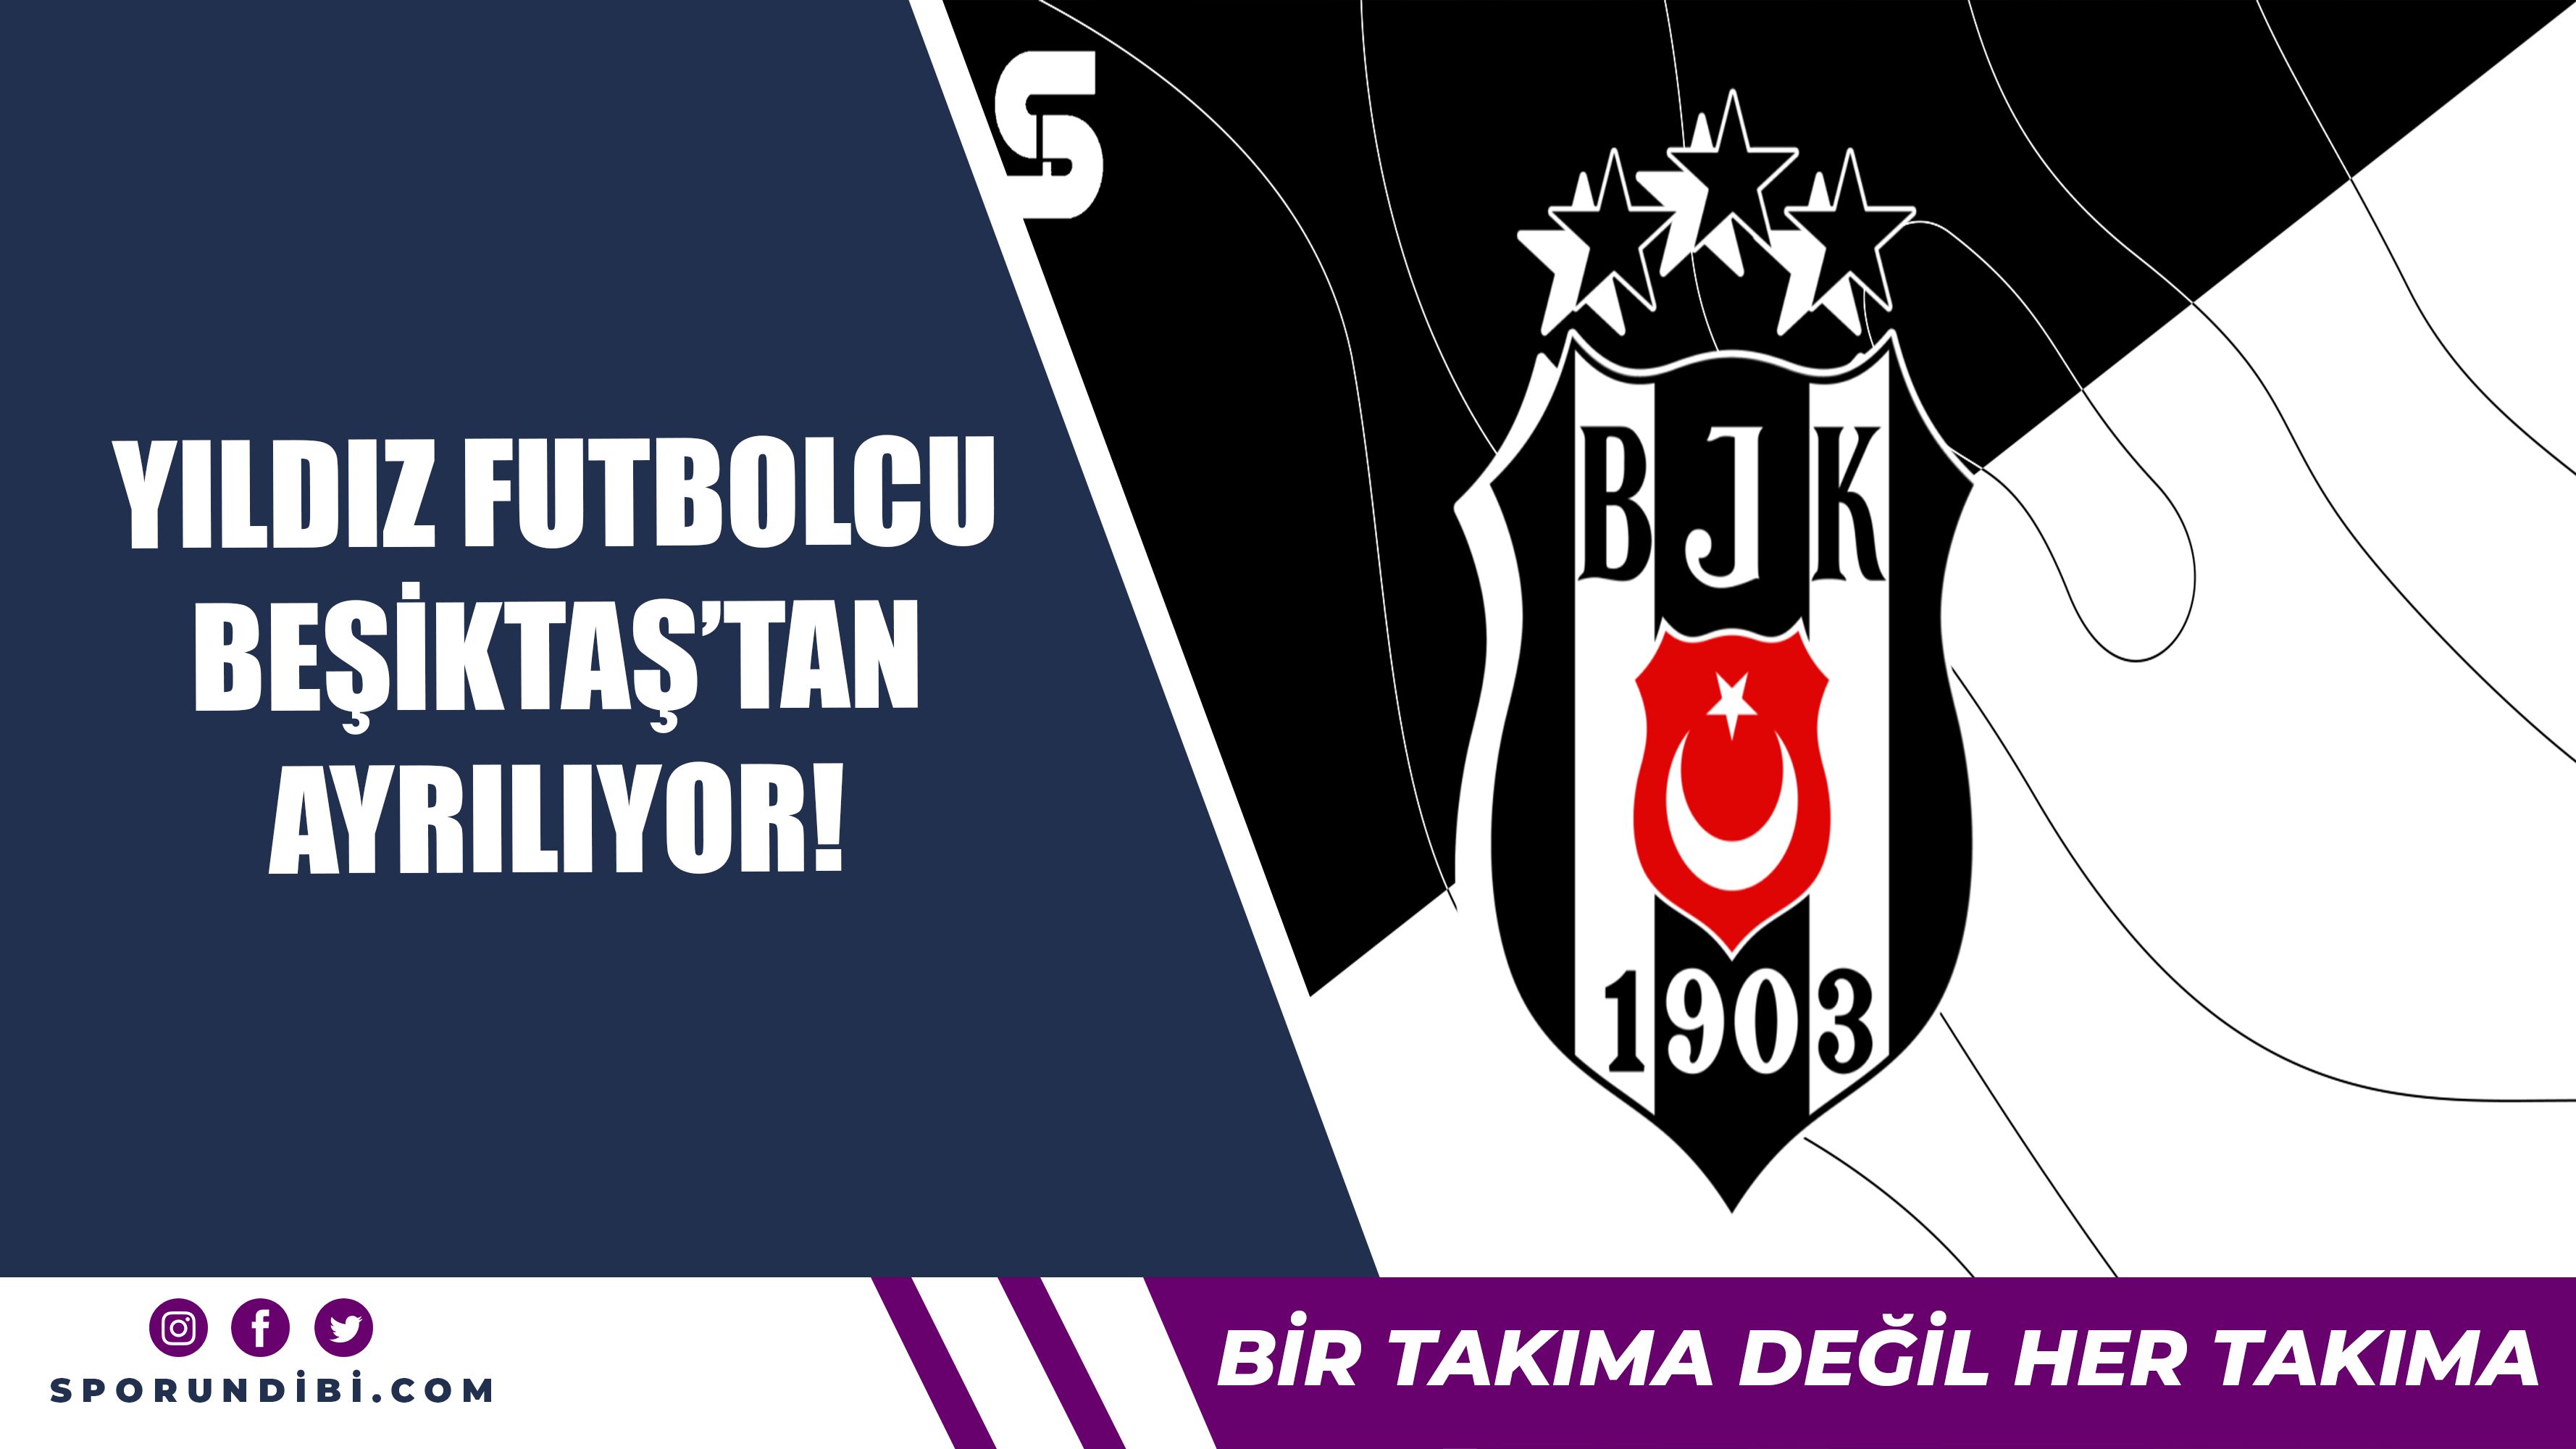 Yıldız futbolcu Beşiktaş'tan ayrılıyor!